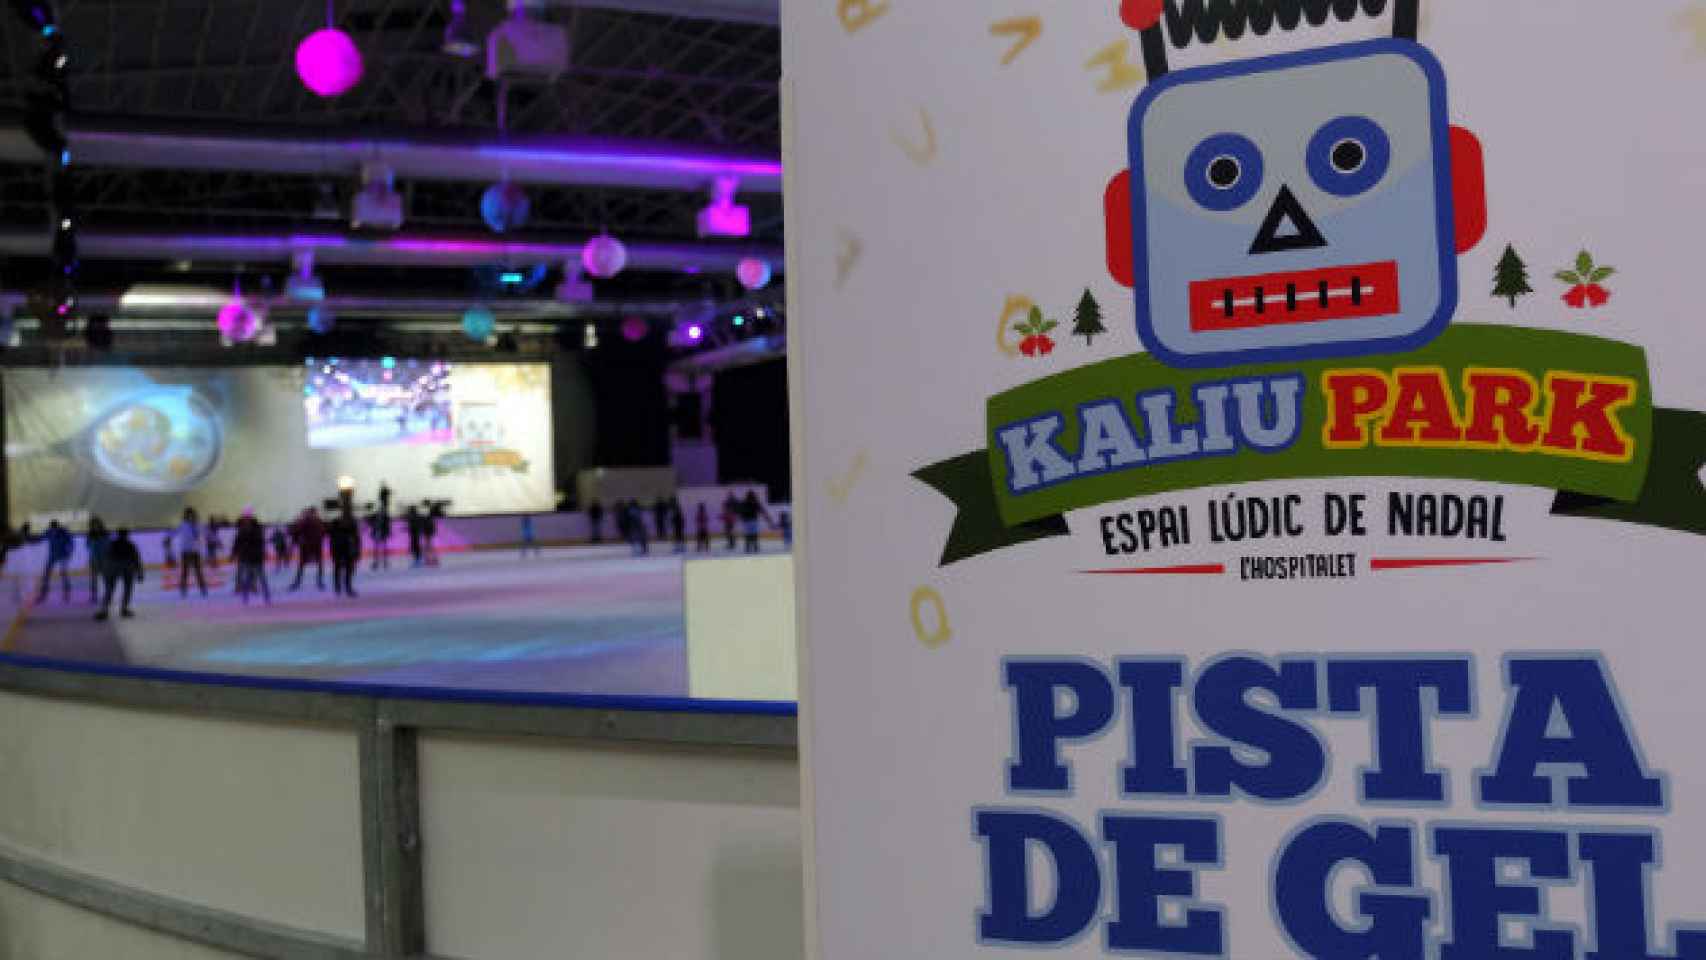 El Kaliu Park tenía como principal reclamo la pista de hielo de patinaje / CG